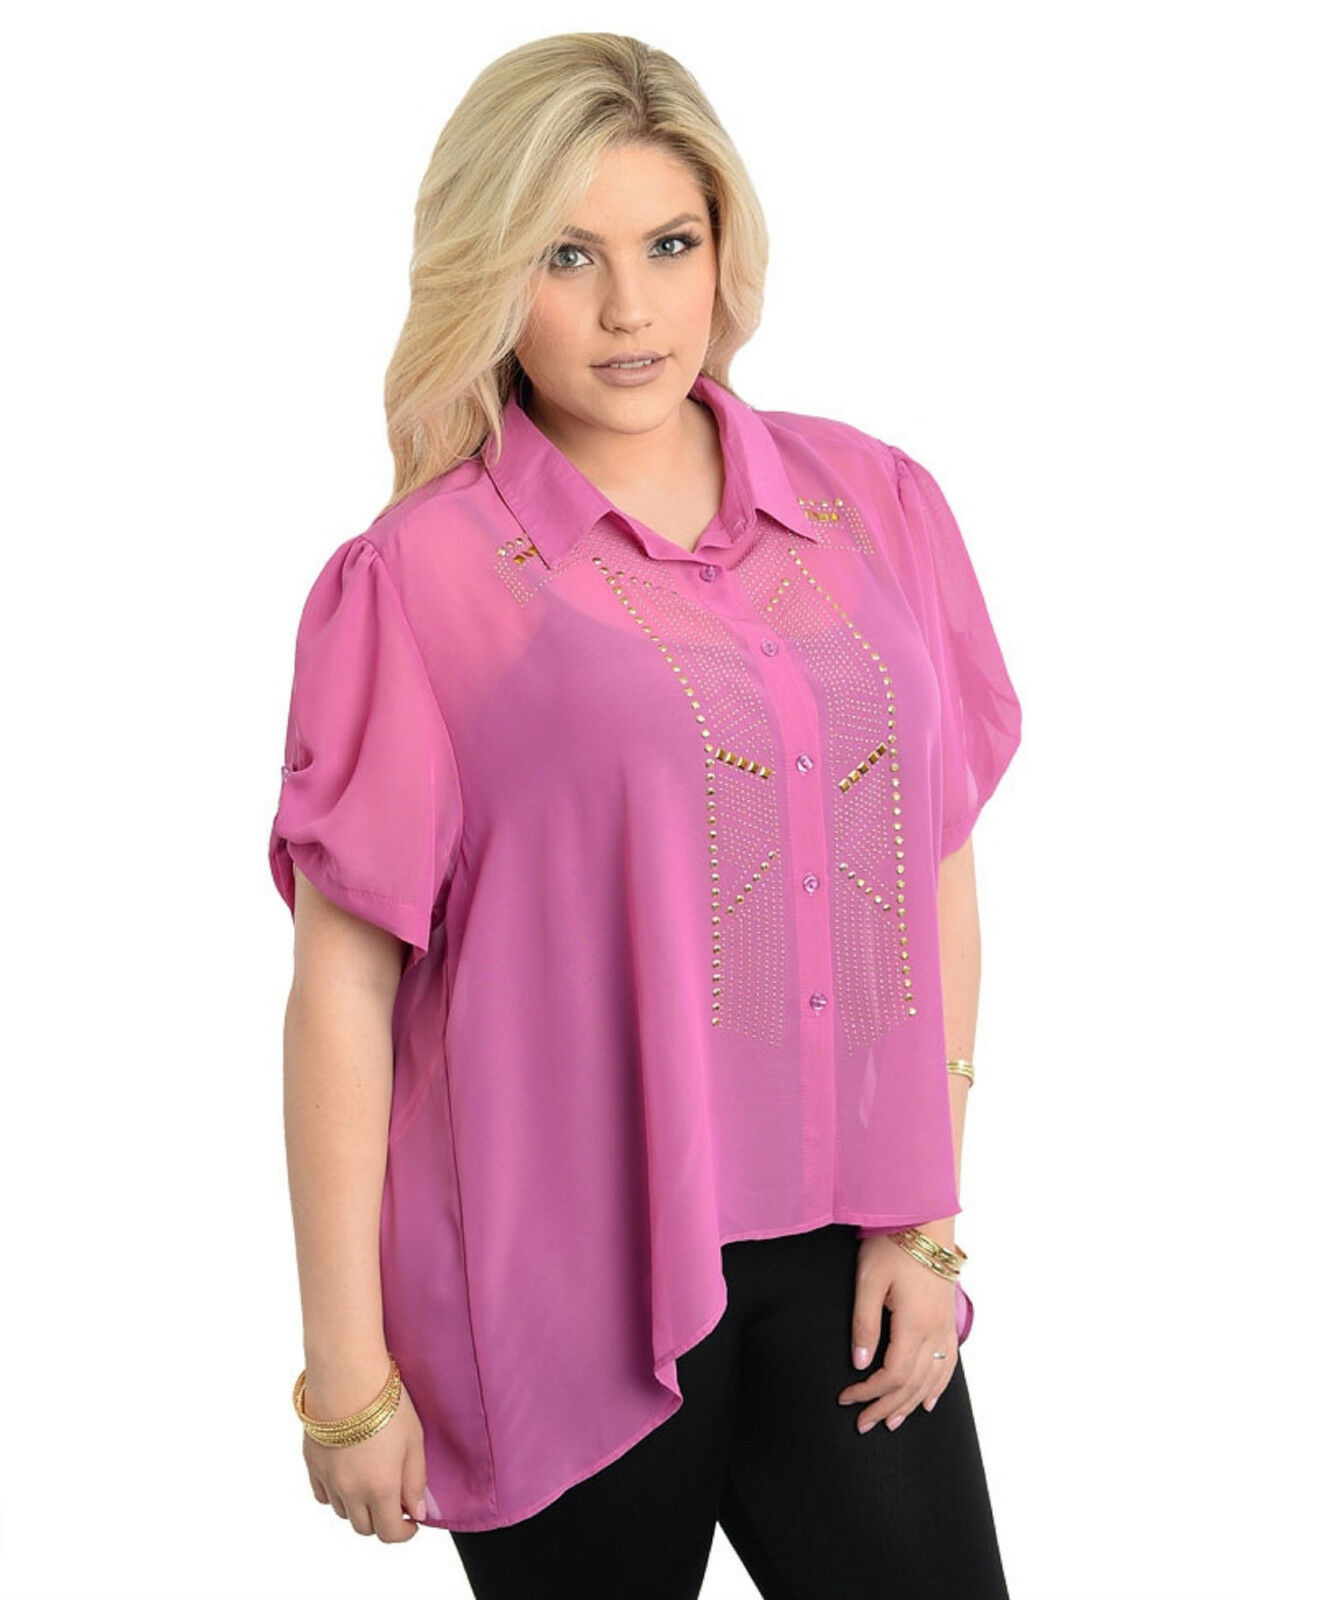 Lamjya Women’s Sheer Button Shirt Embellished Hi-Lo Hem Lilac Plus Size 1X~2X